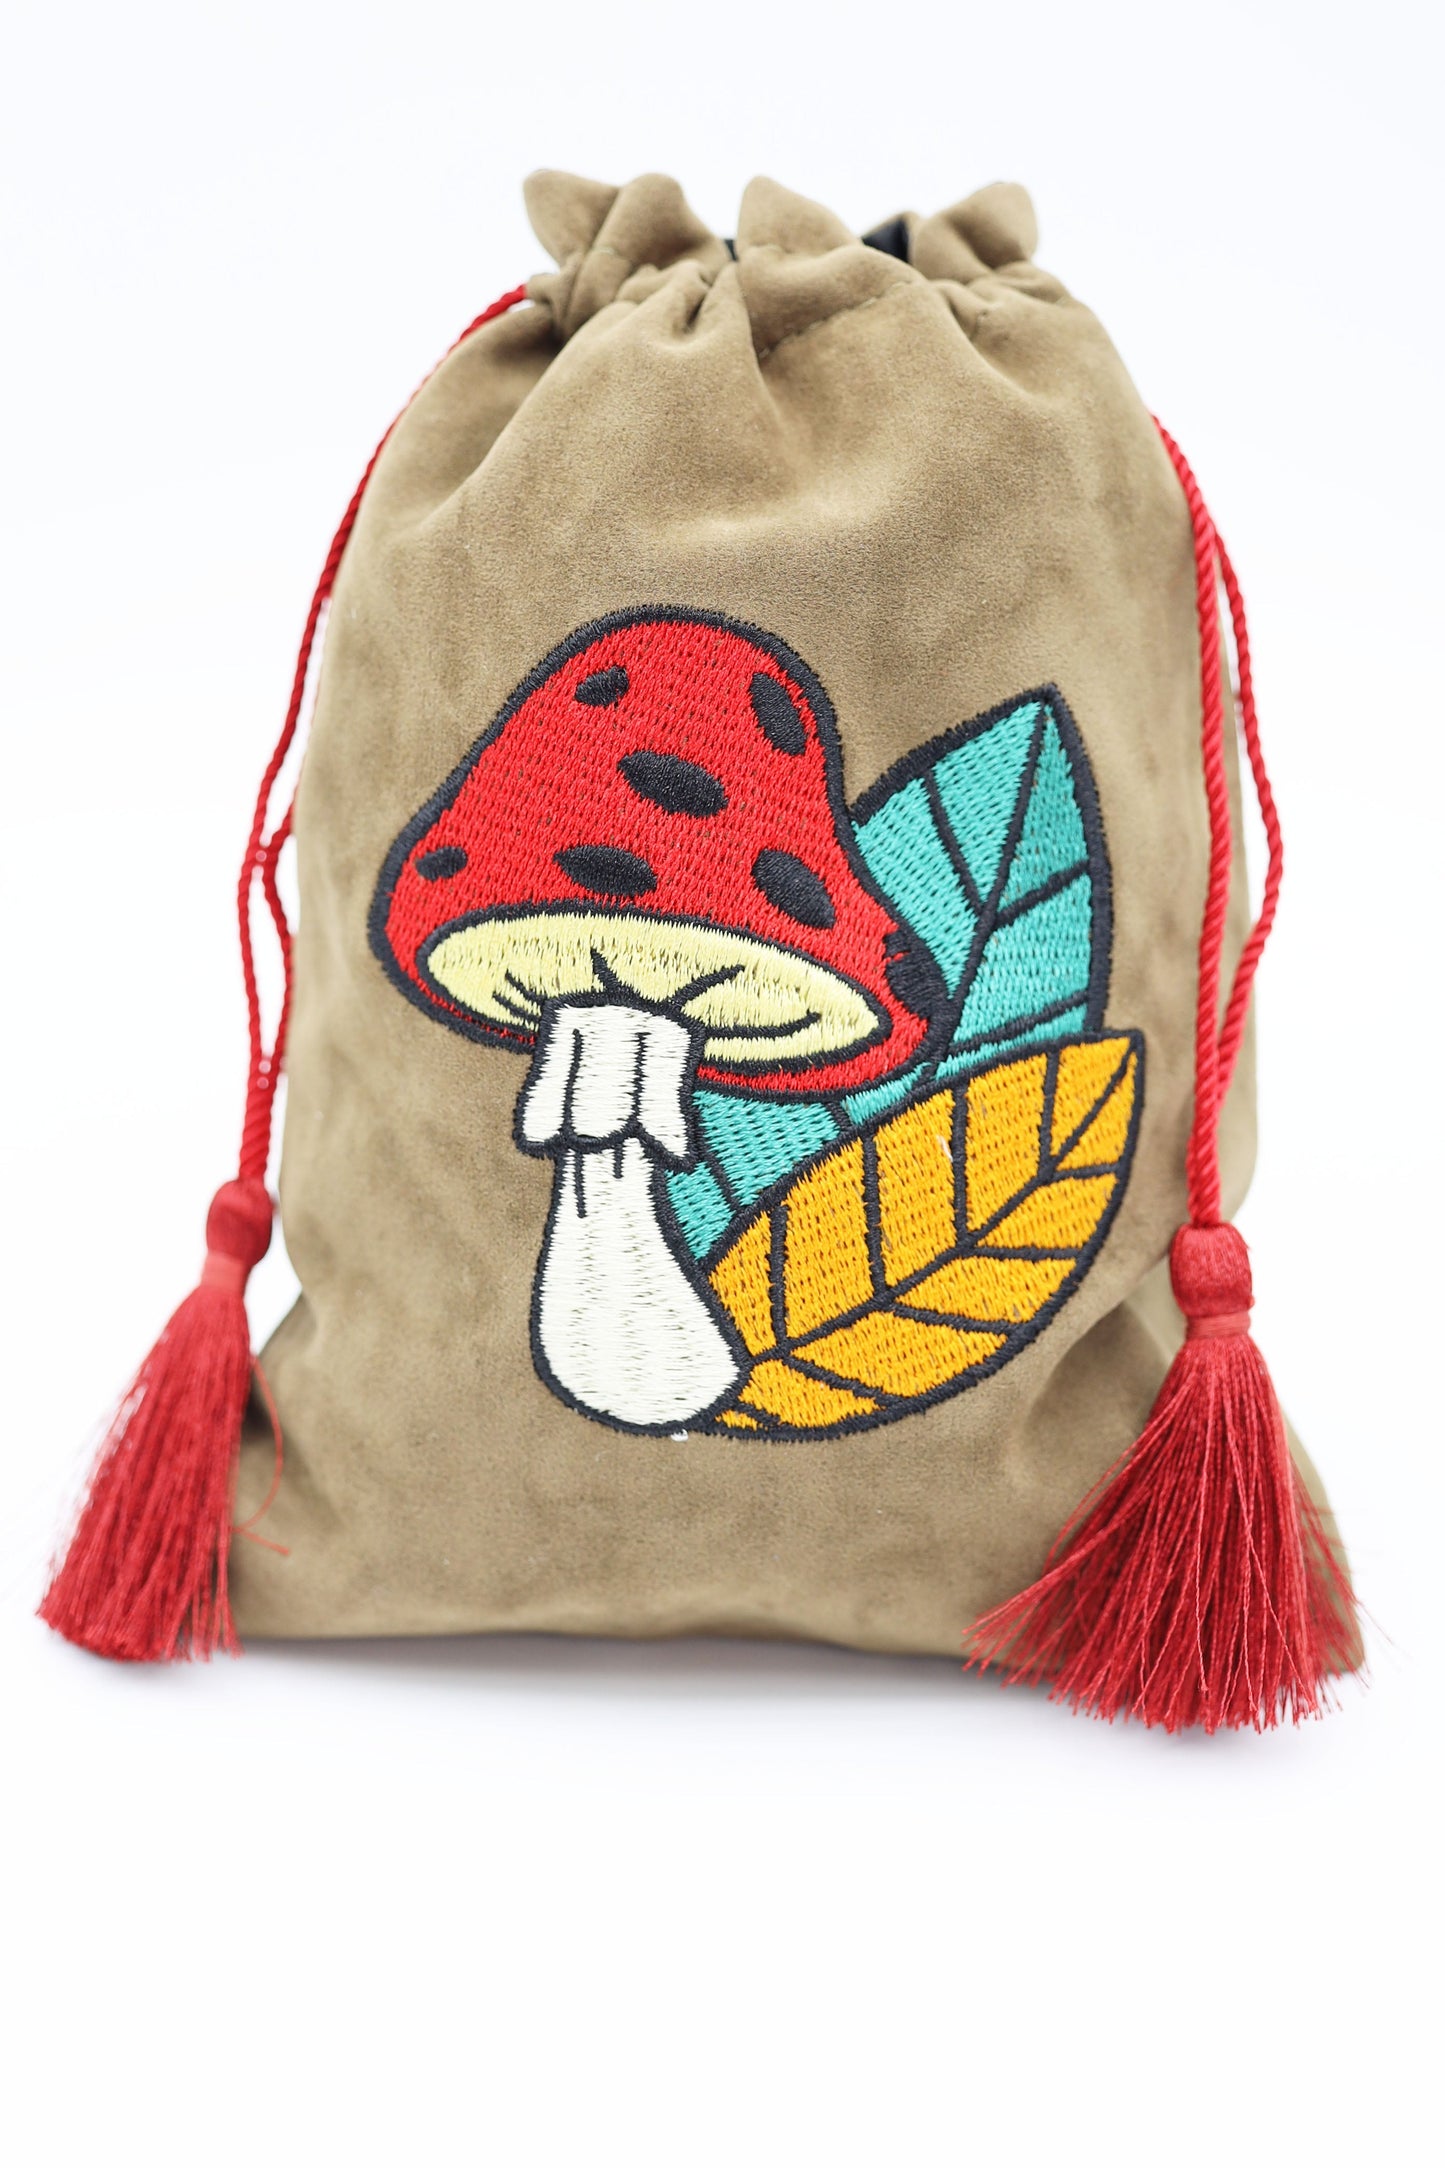 Dice Bag Mushroom and Leaf